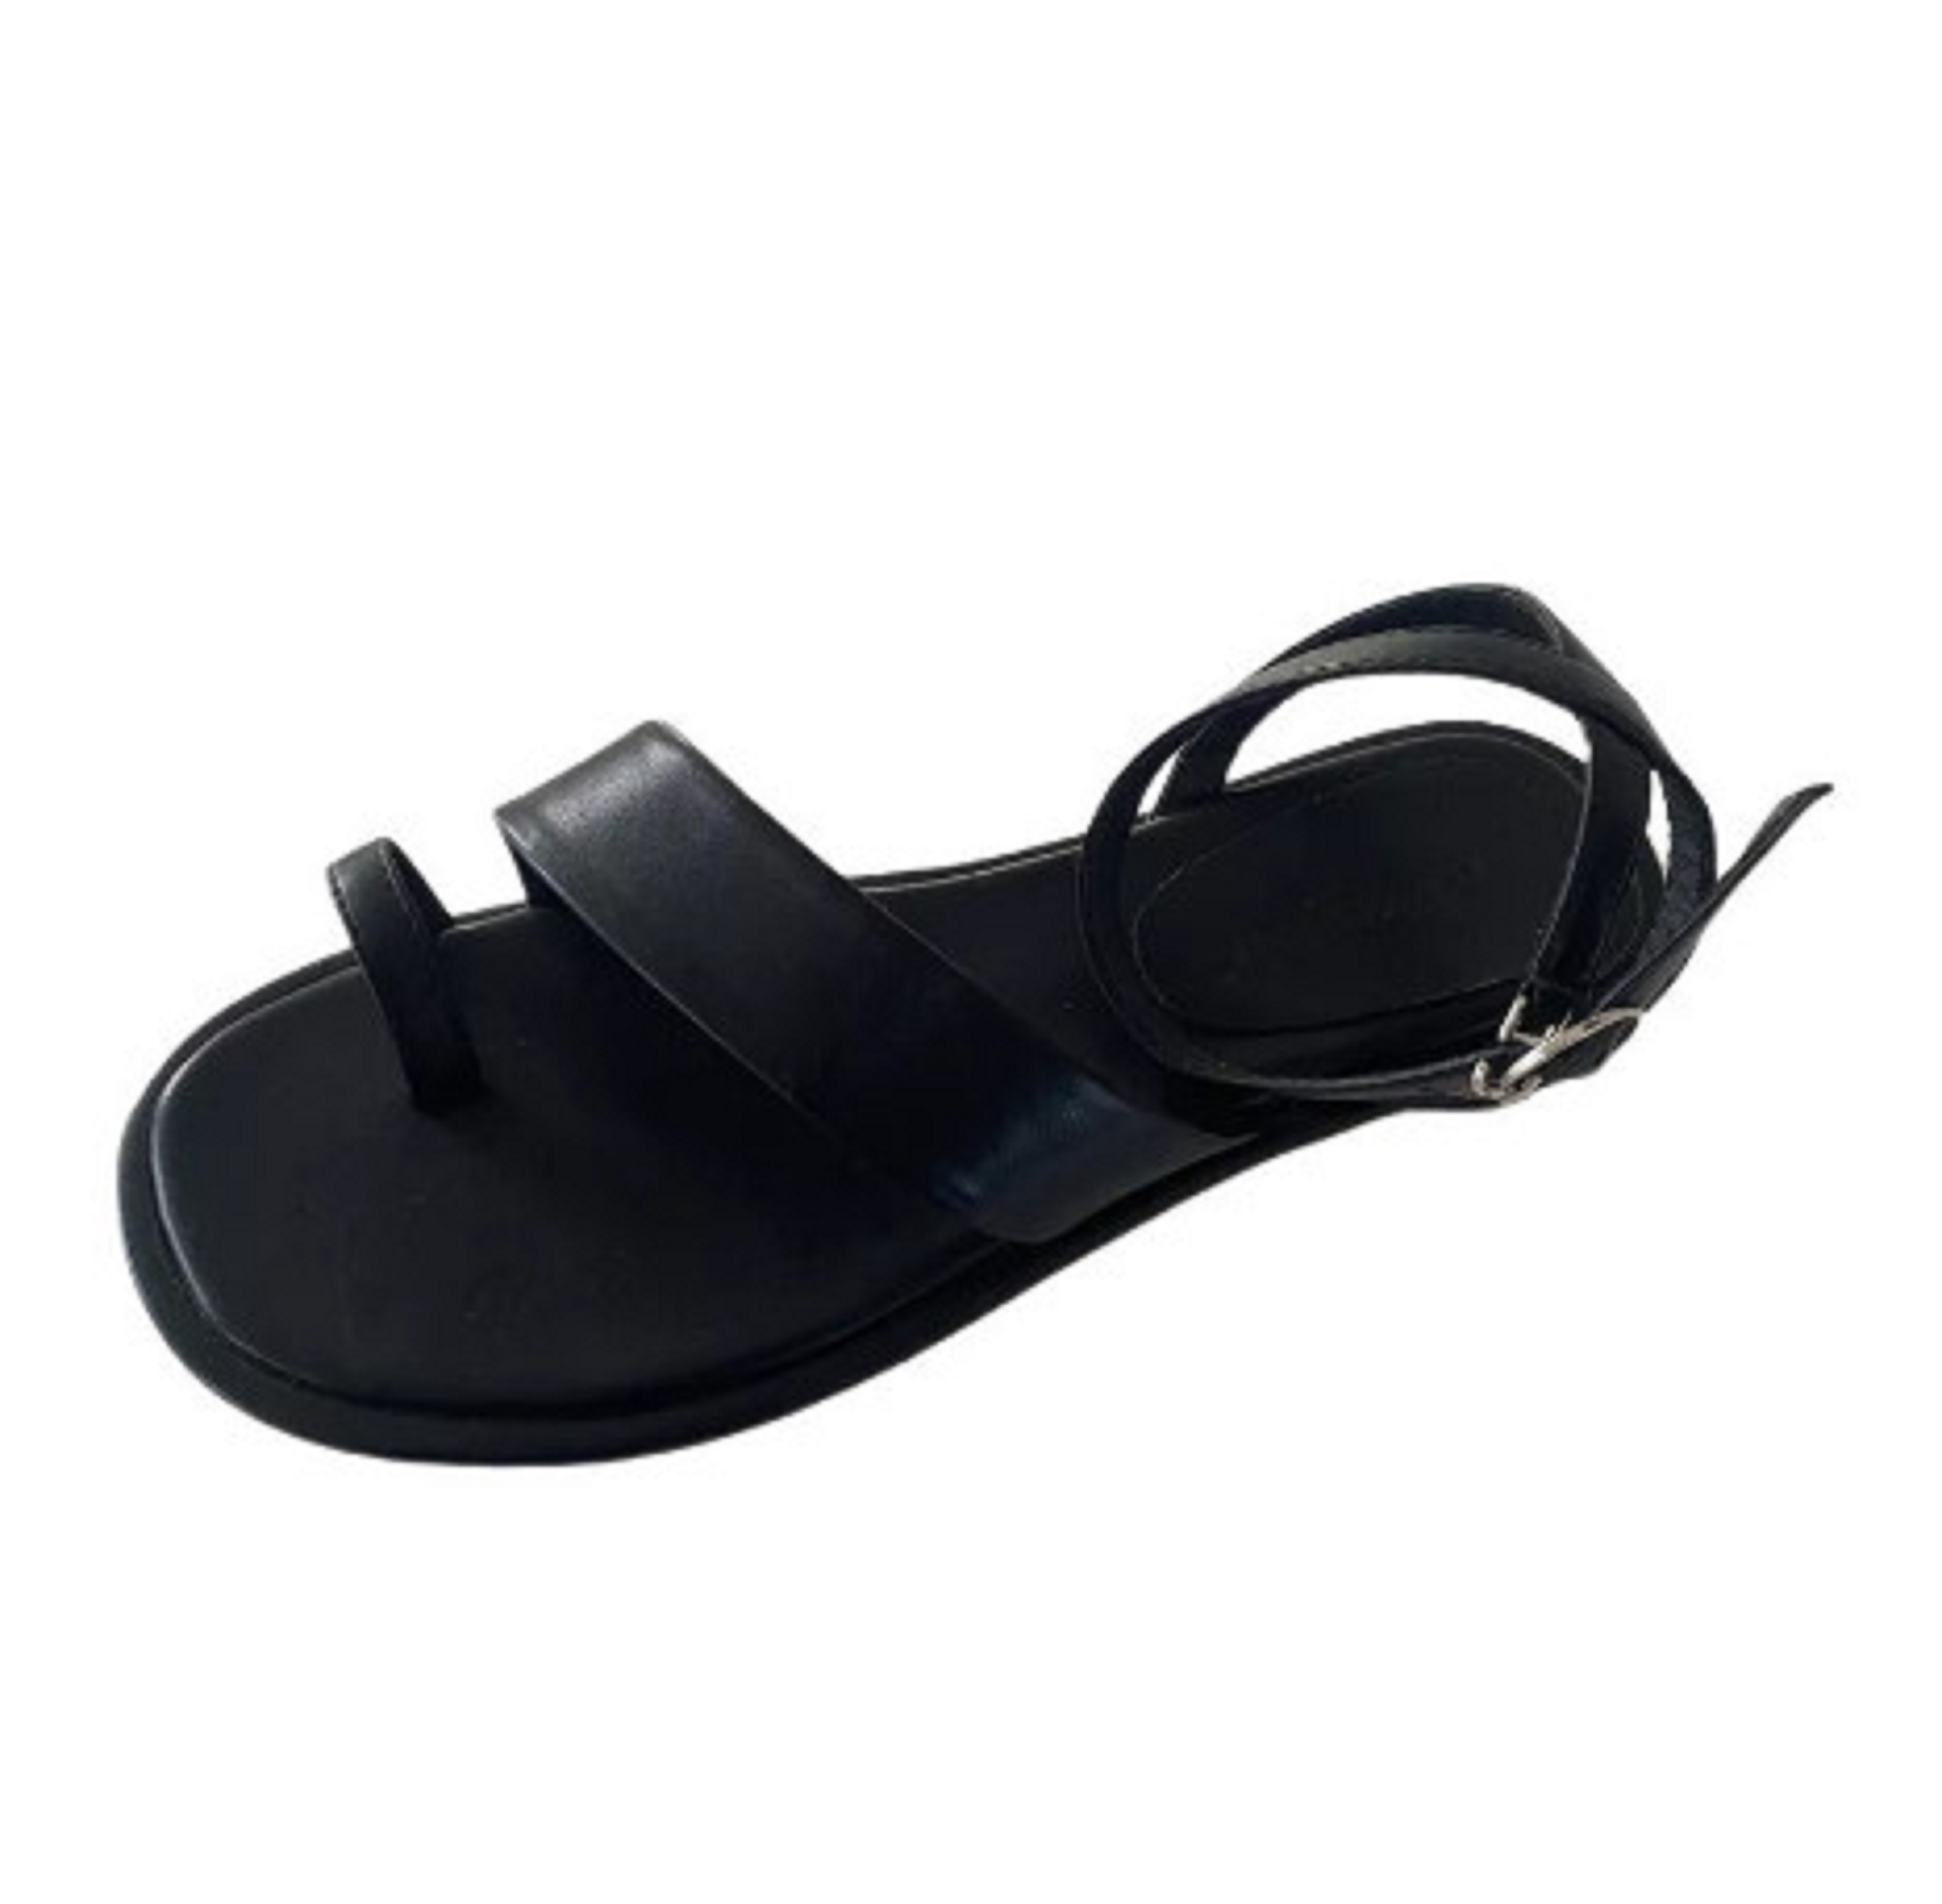 Giày sandal đế thấp xỏ ngón quai ngang mã THS39 trẻ trung, năng động